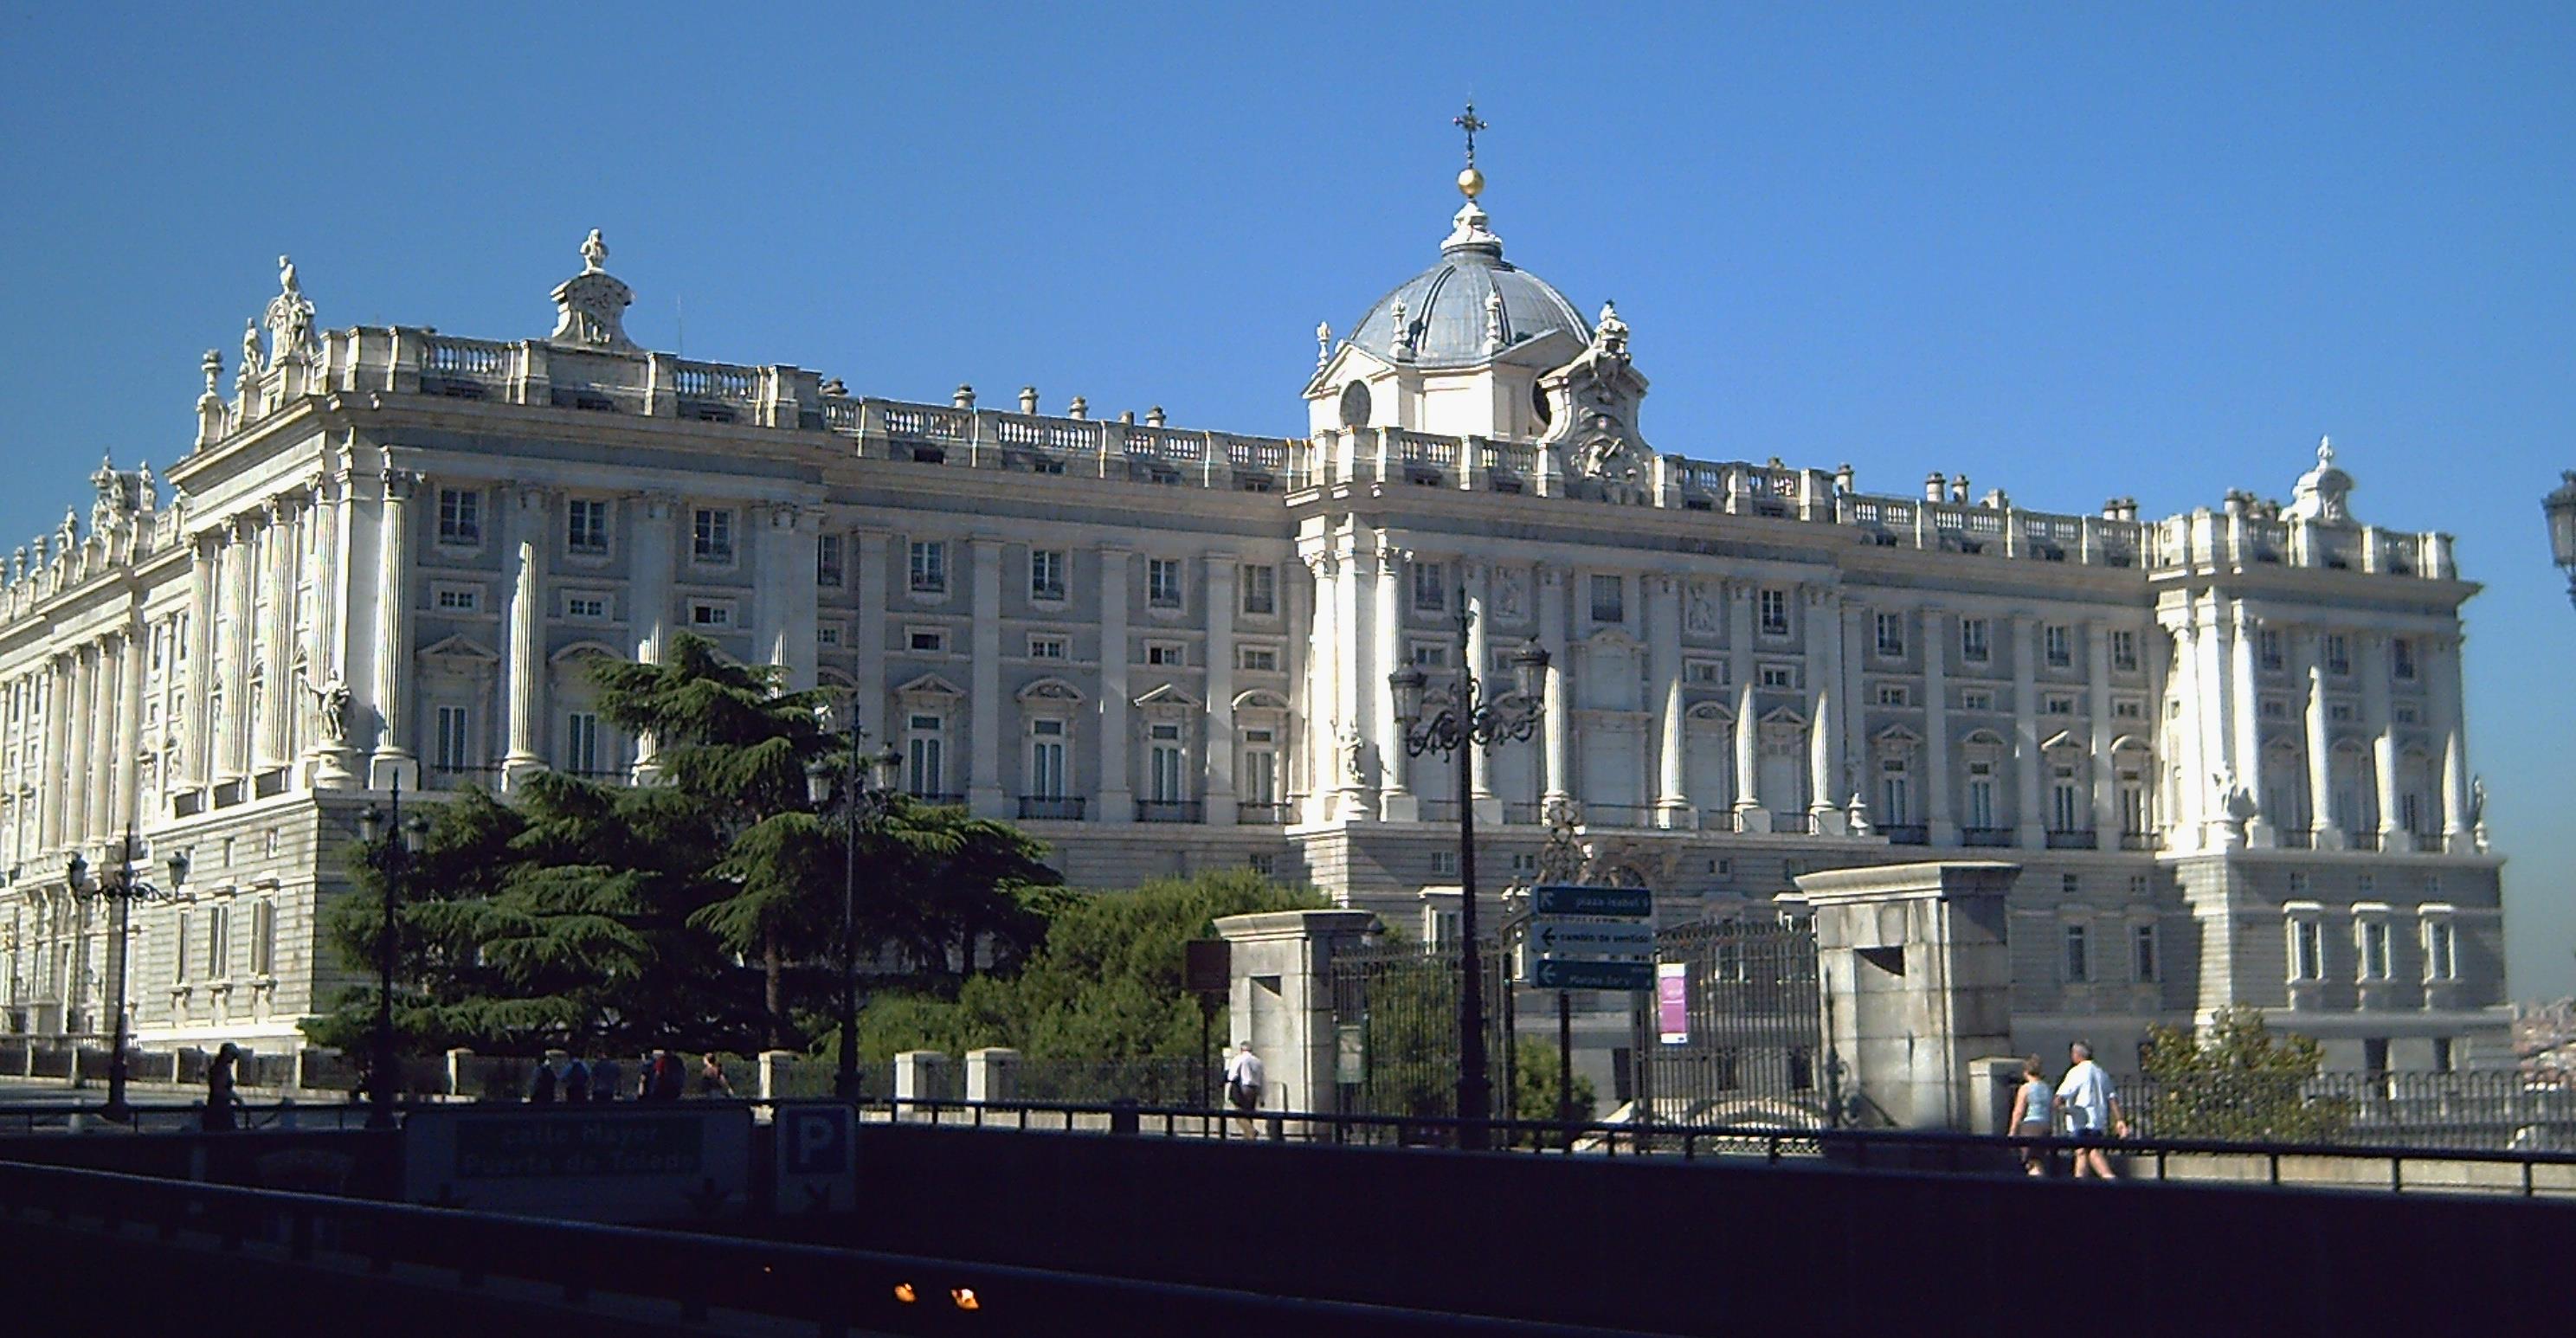 Essential-Madrid:-Prado-Museum-and-Royal-Palace-30